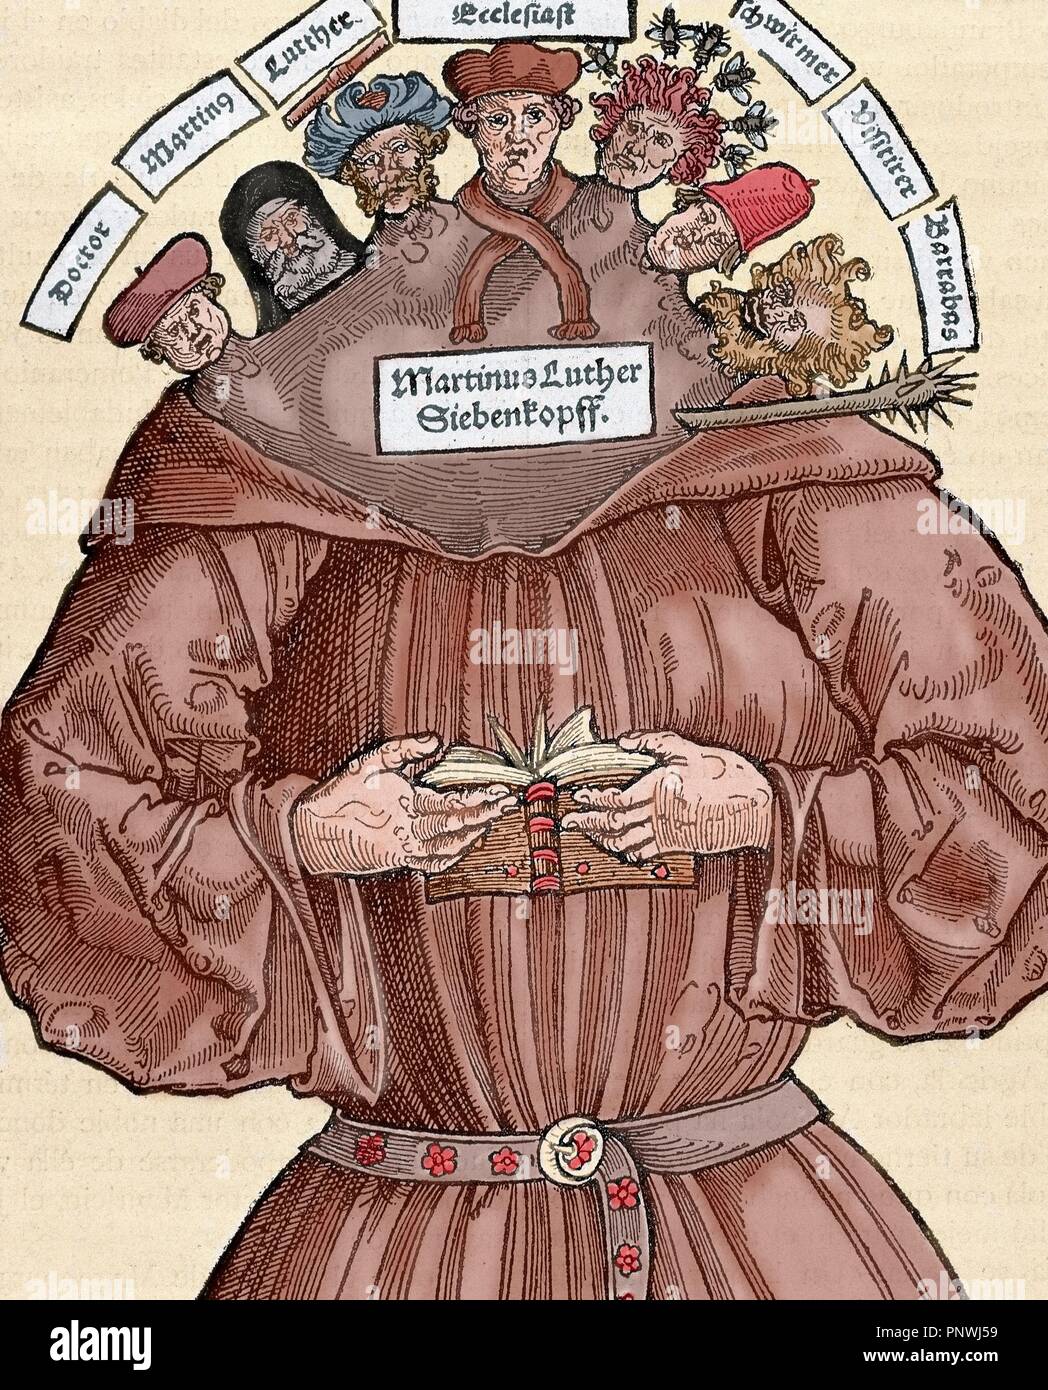 Reforma Protestante. Siglo 16. Alemania. La sátira contra Martín Lutero (1483-1546). Grabado en color. Foto de stock